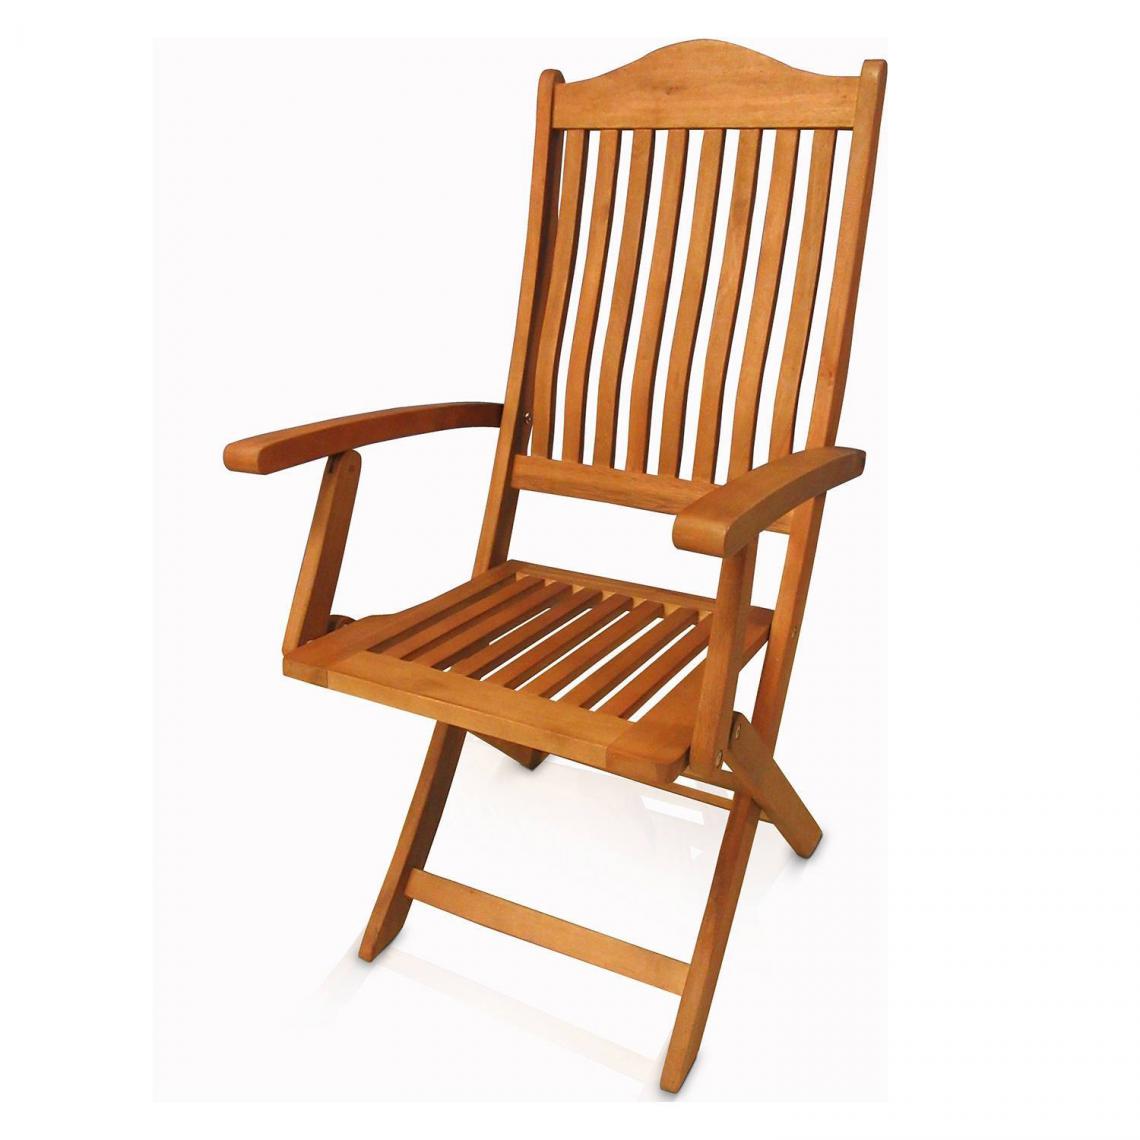 Alter - Chaise d'extérieur, style classique, Chaise d'extérieur en bois d'eucalyptus, 54x51,3h103 cm, Couleur marron - Chaises